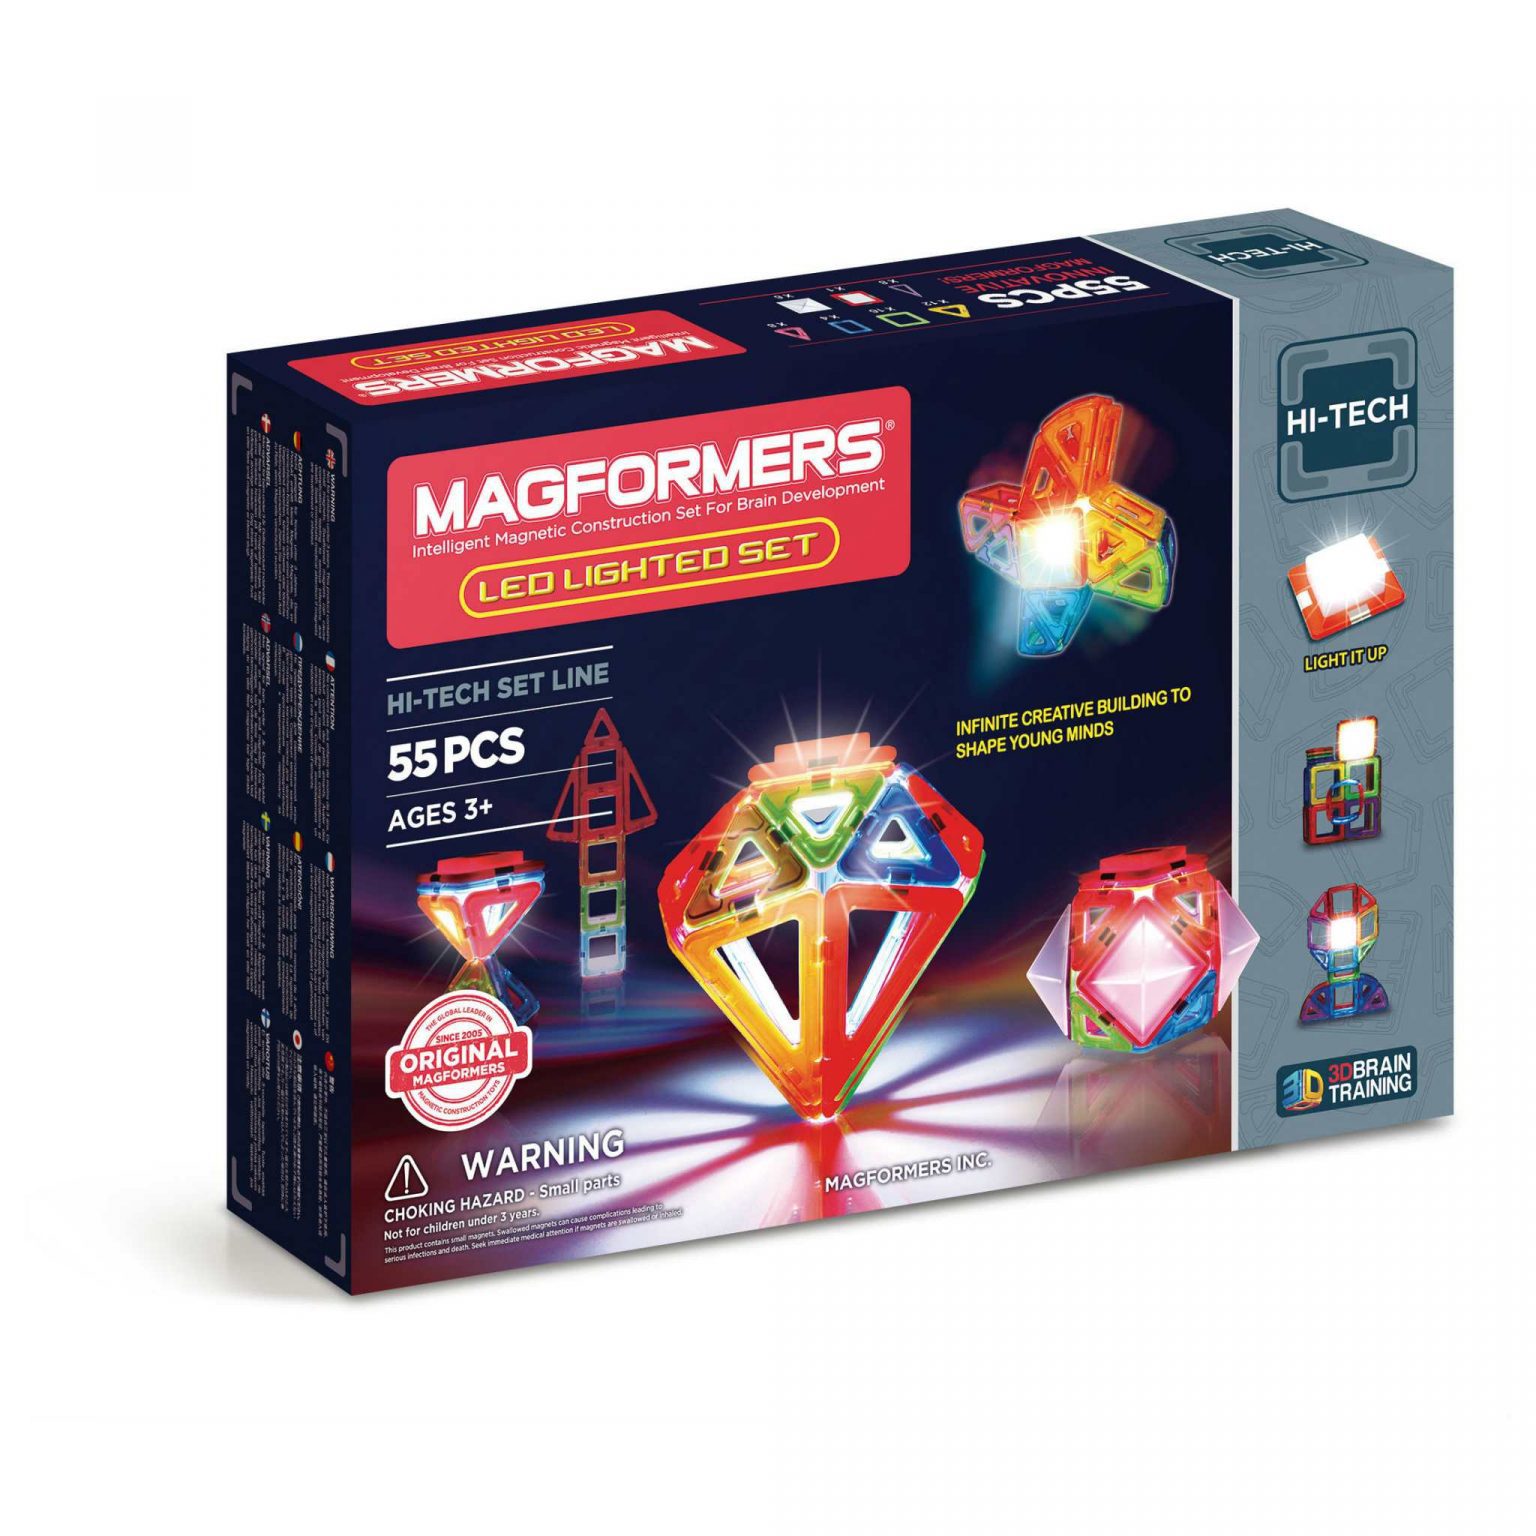 Magformers Hi-Tech – Led lighted set